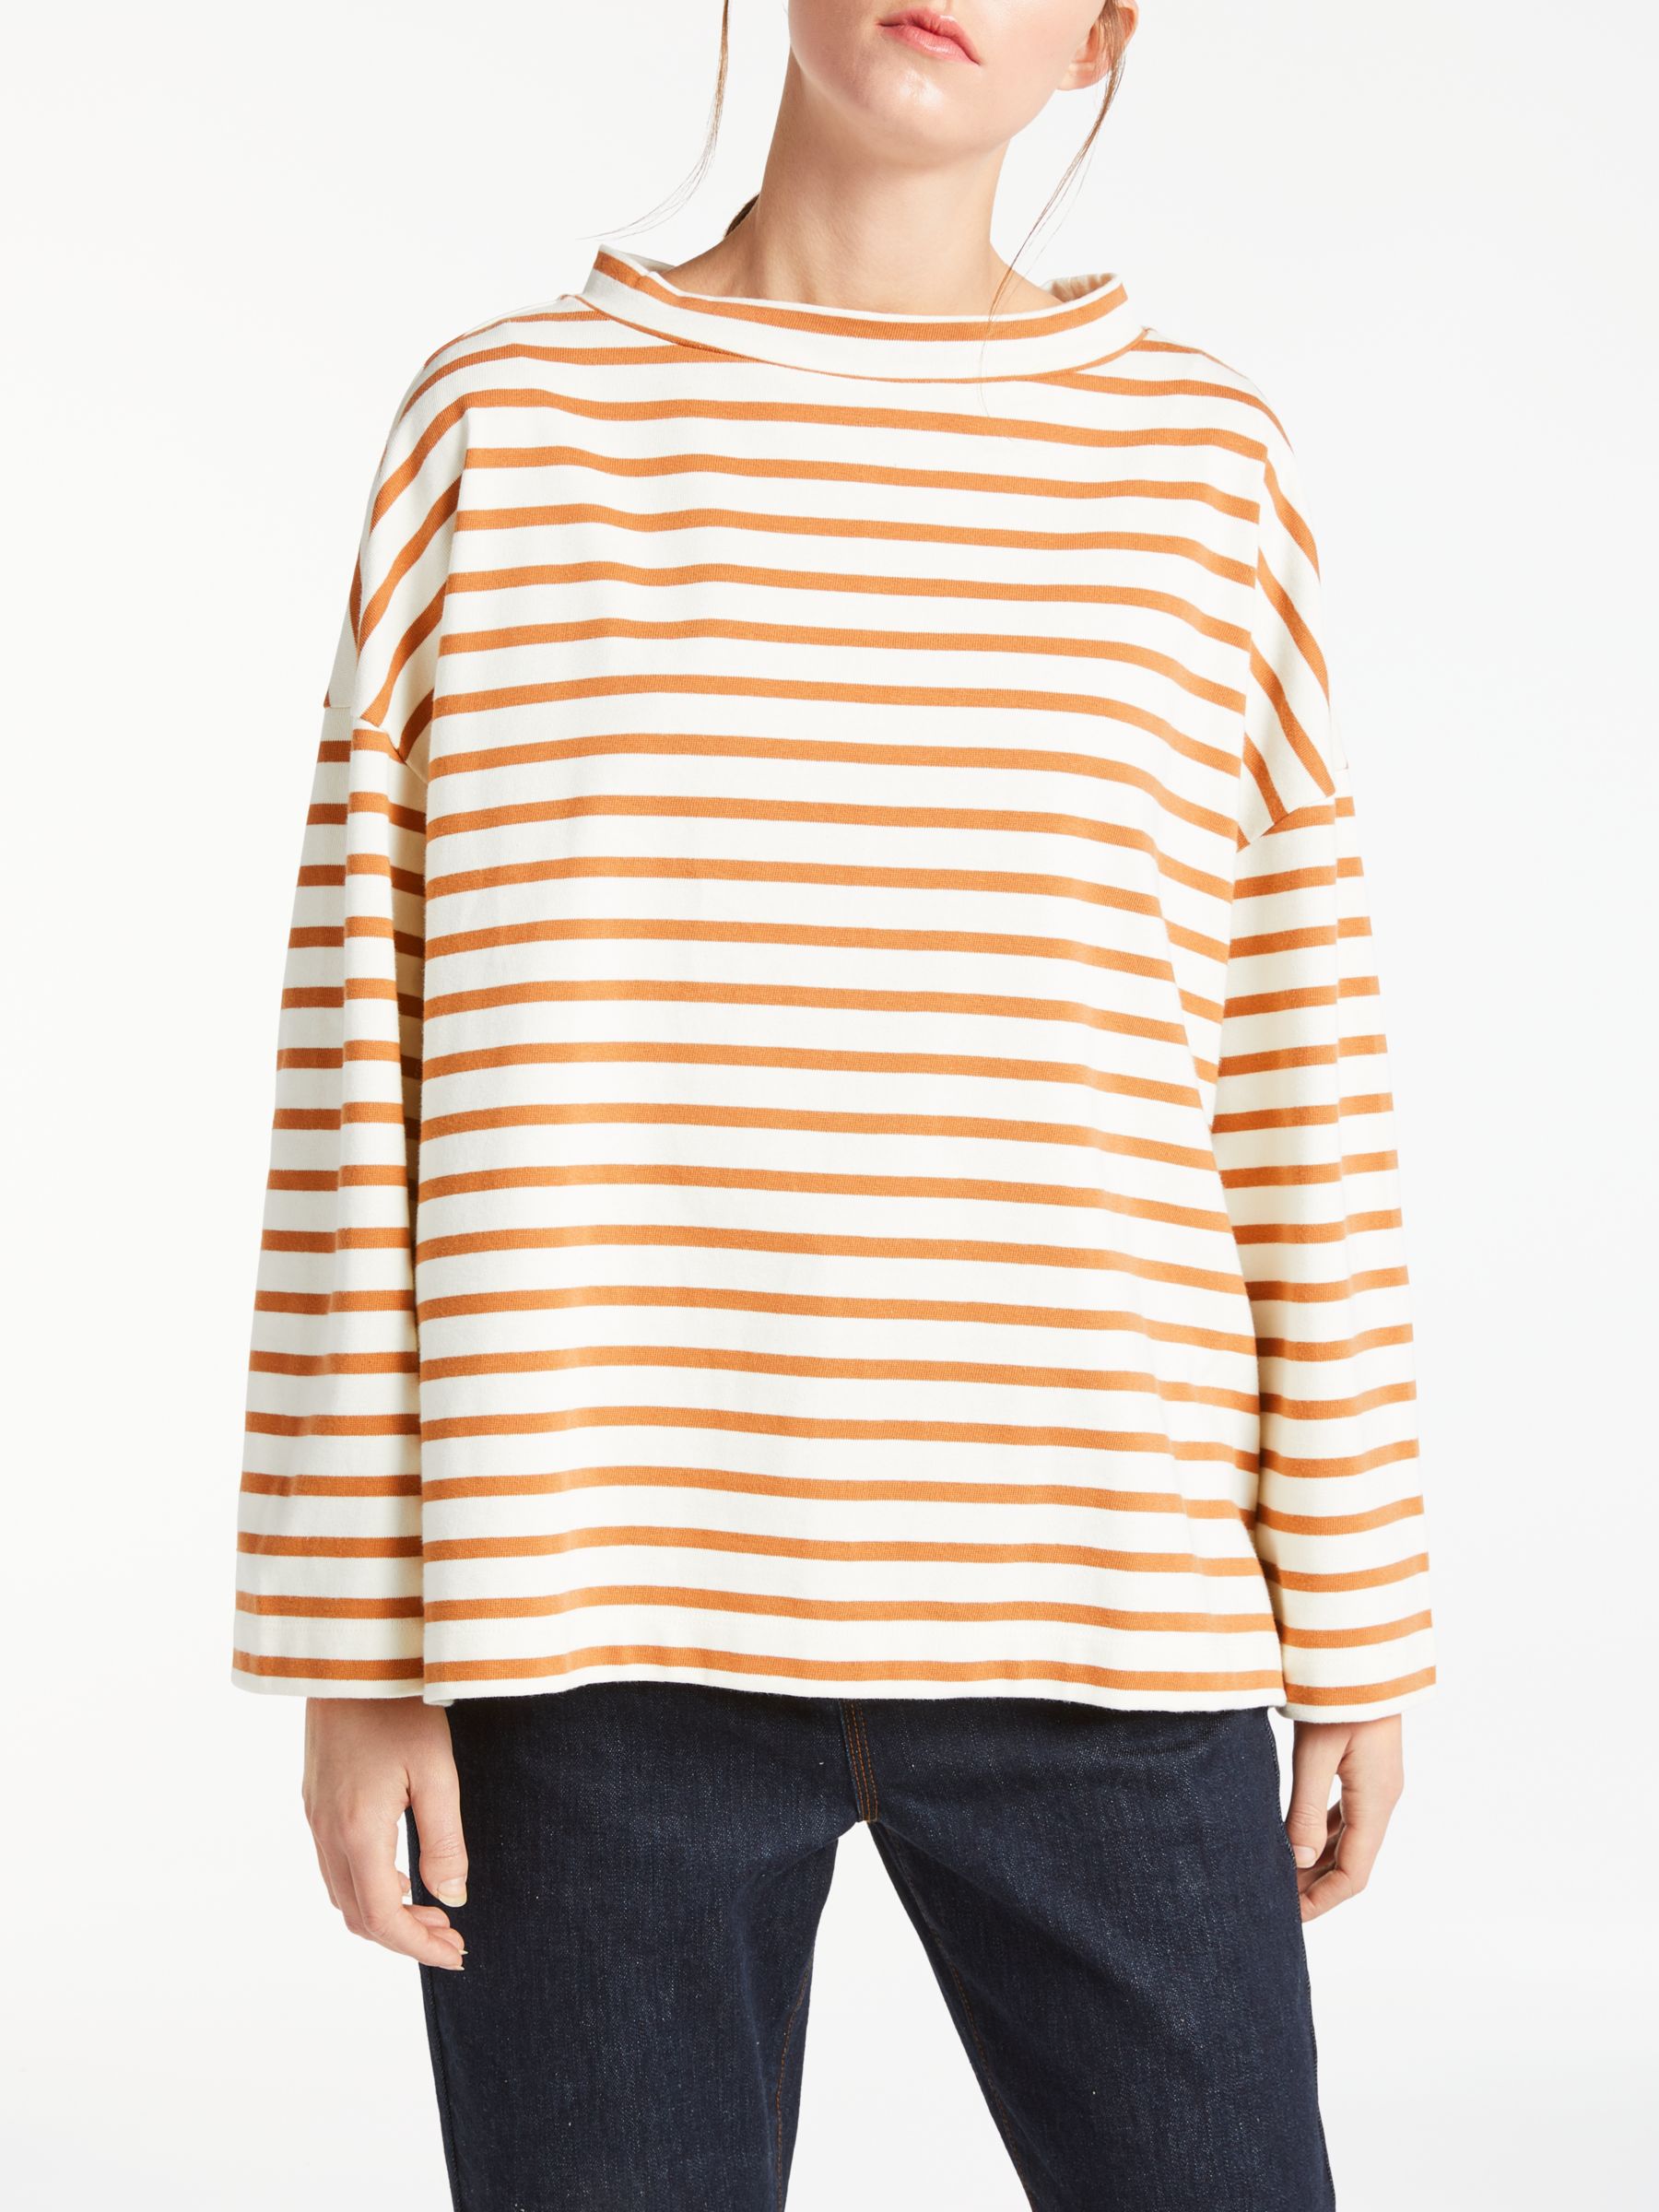 Kin Stripe Mock Neck T-Shirt, Brown/White, M